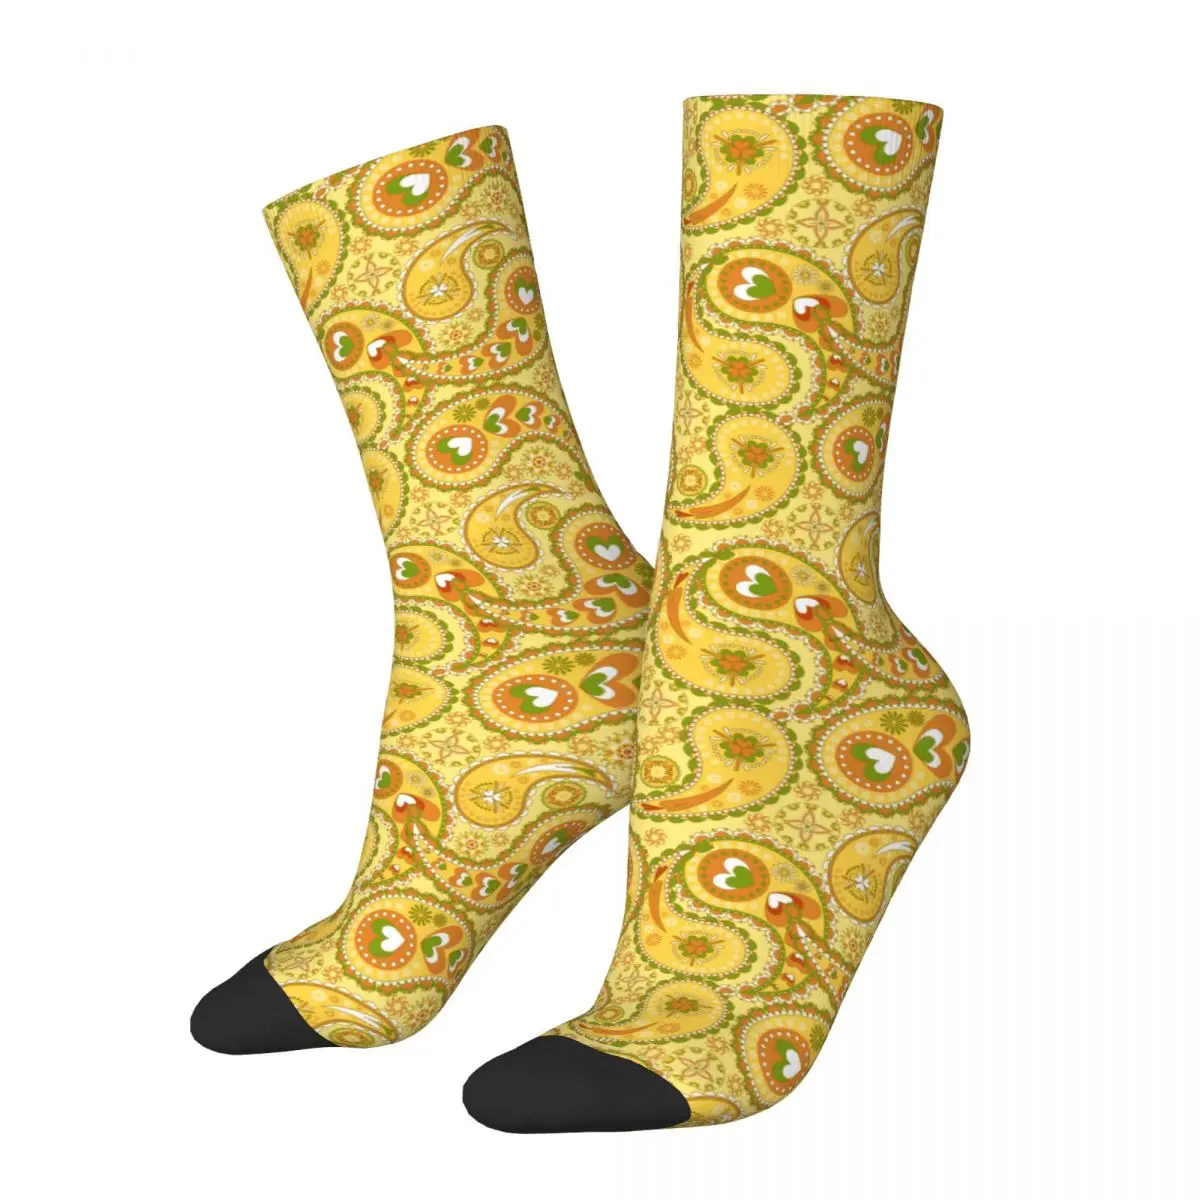 

Цветные носки унисекс с узором пейсли, персидская культура кешью, индийская культура, Мерч, футбольные носки, мягкие, Лучшие идеи для подарка